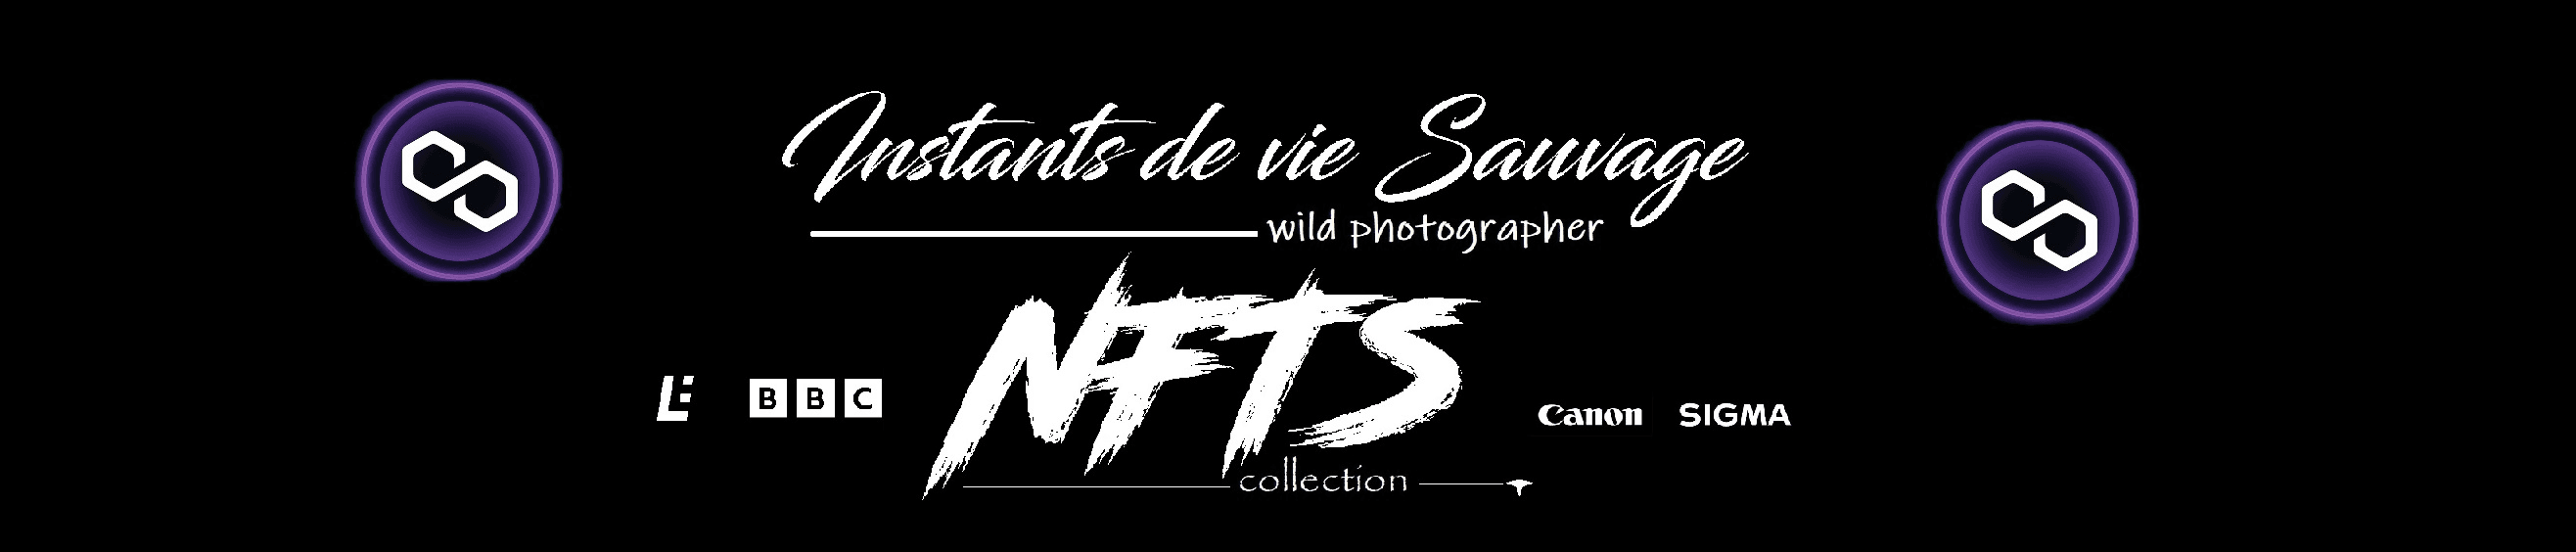 Instants_de_vie_sauvage banner